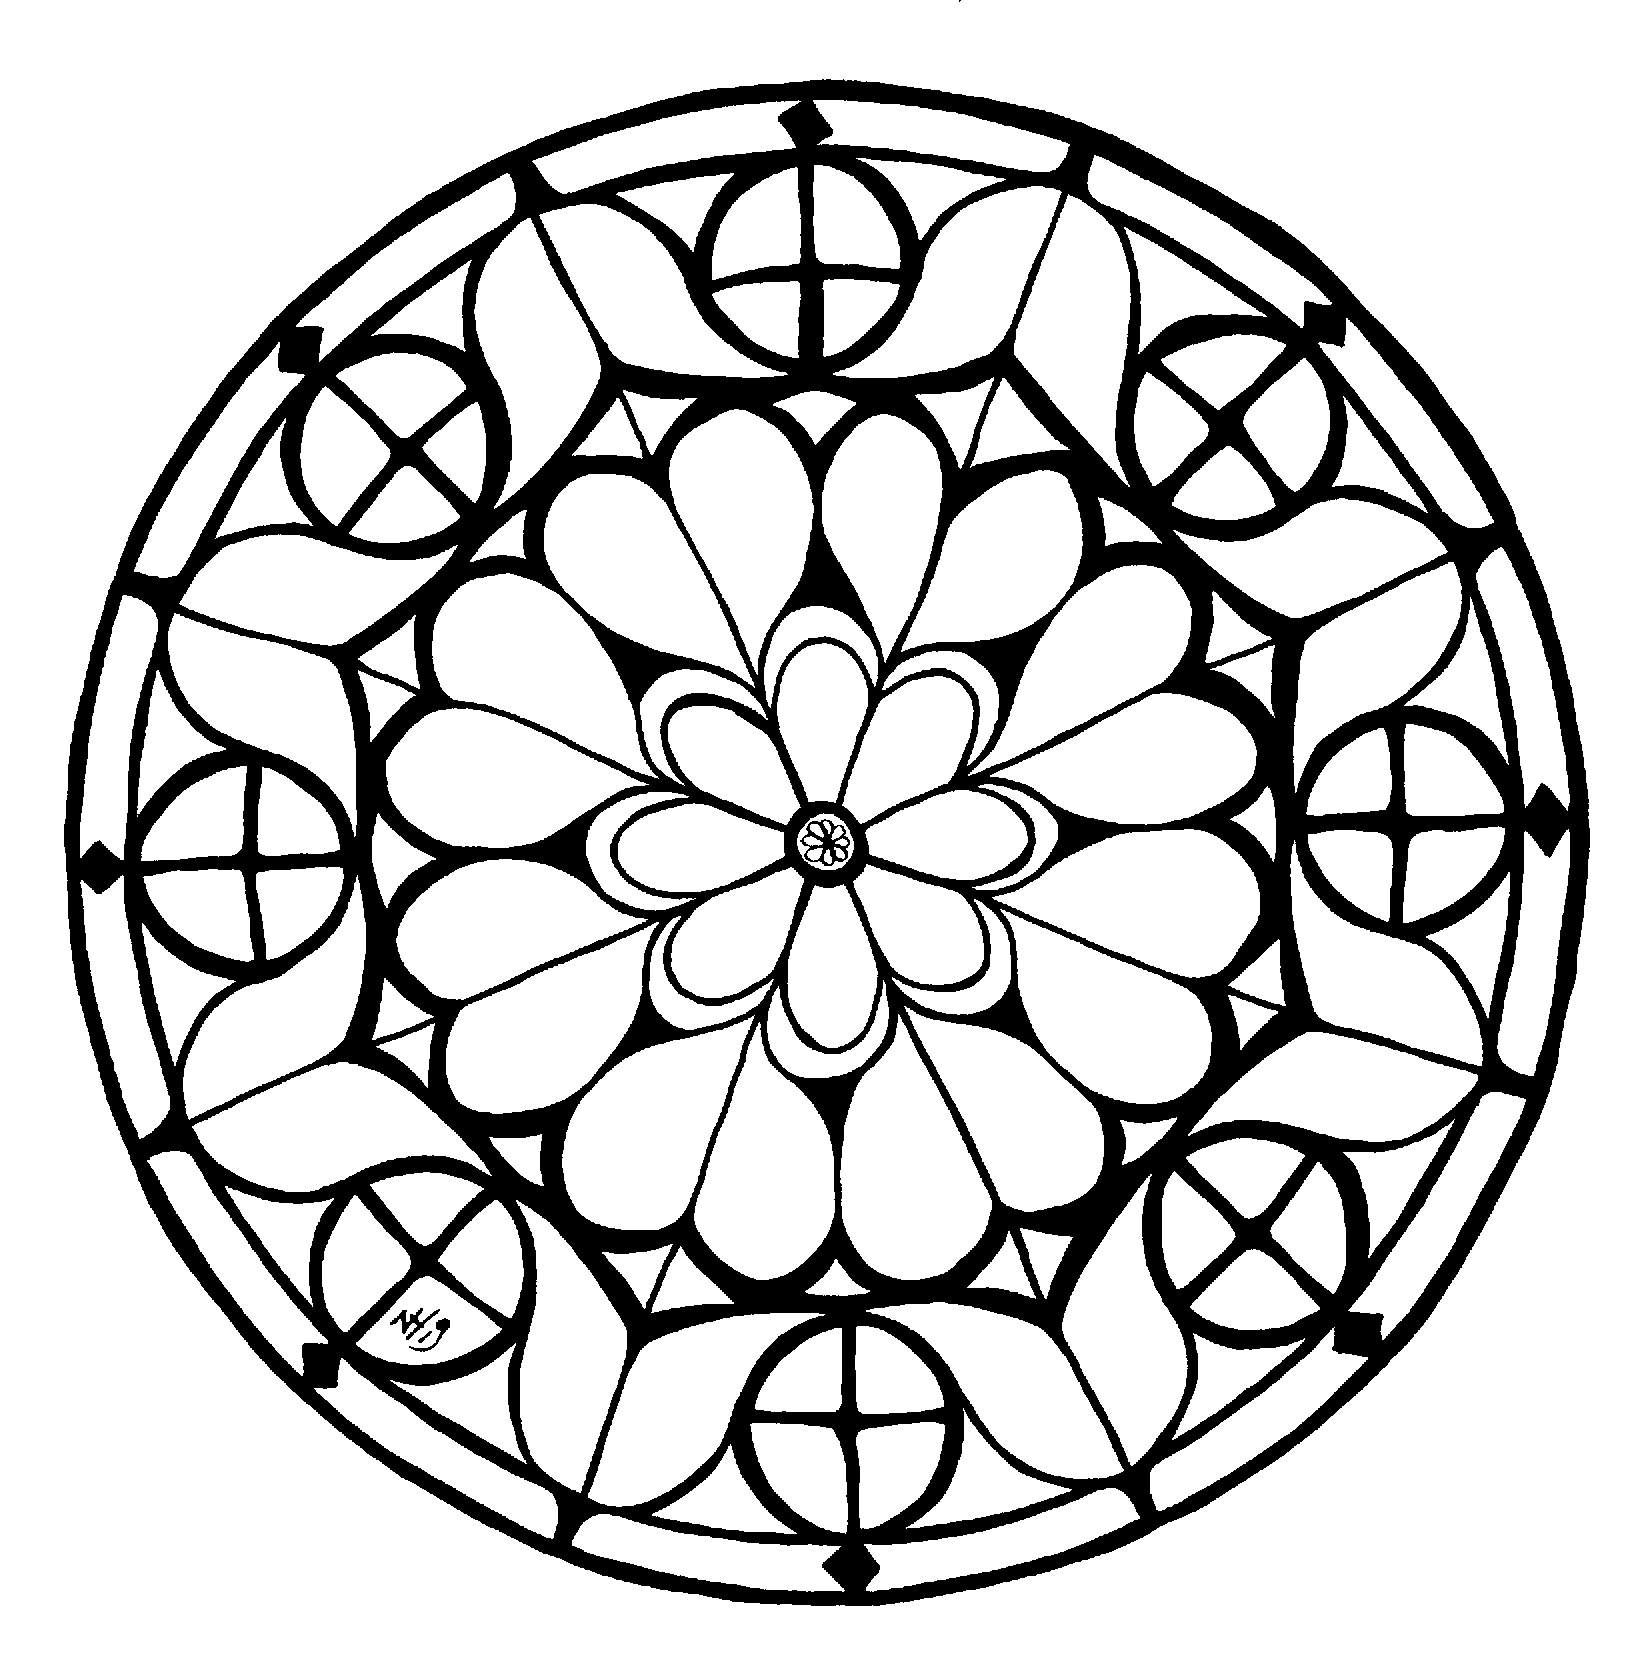 Mandala Inspiré De La Rosace Sud De La Cathédrale D&amp;#039;Evreux - Version 11 pour Dessin Mosaique A Imprimer 